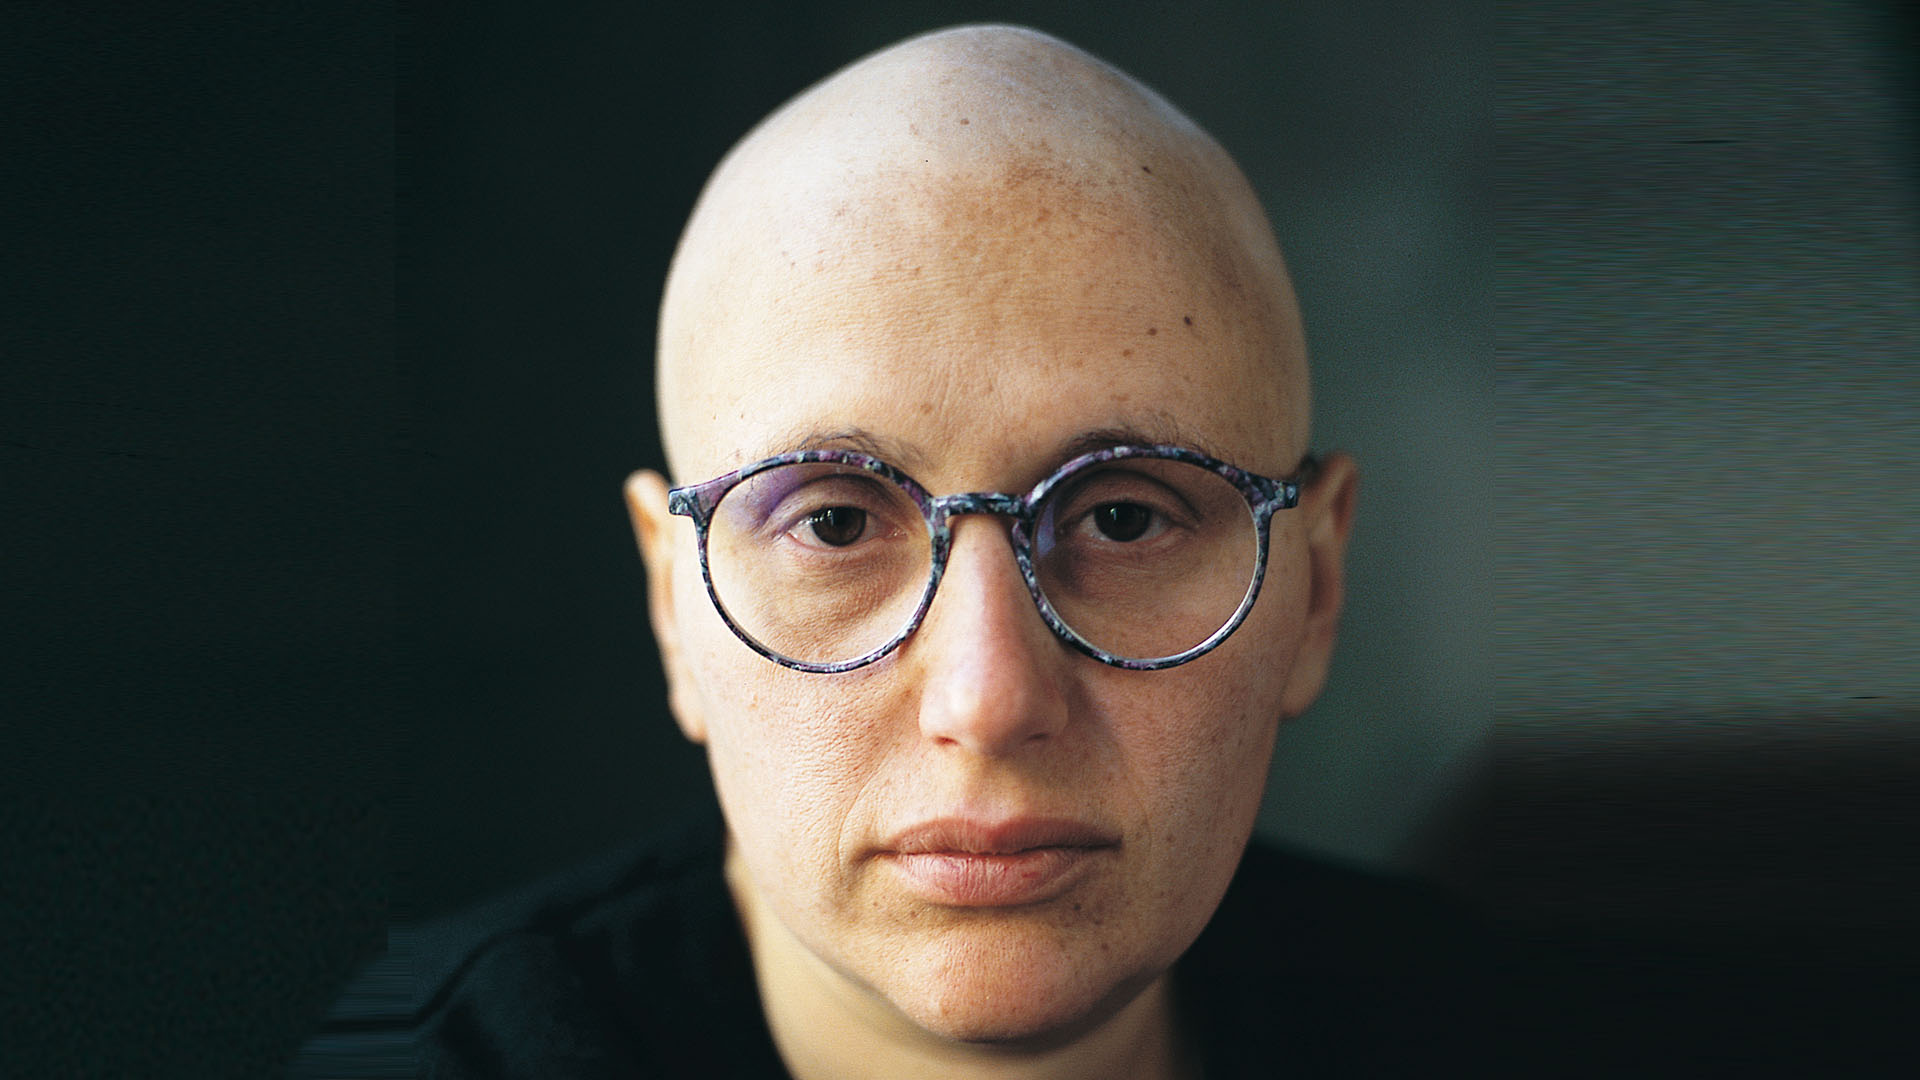 Tiempos difíciles. Patricia Kolesnicov y los efectos visibles de la quimioterapia.